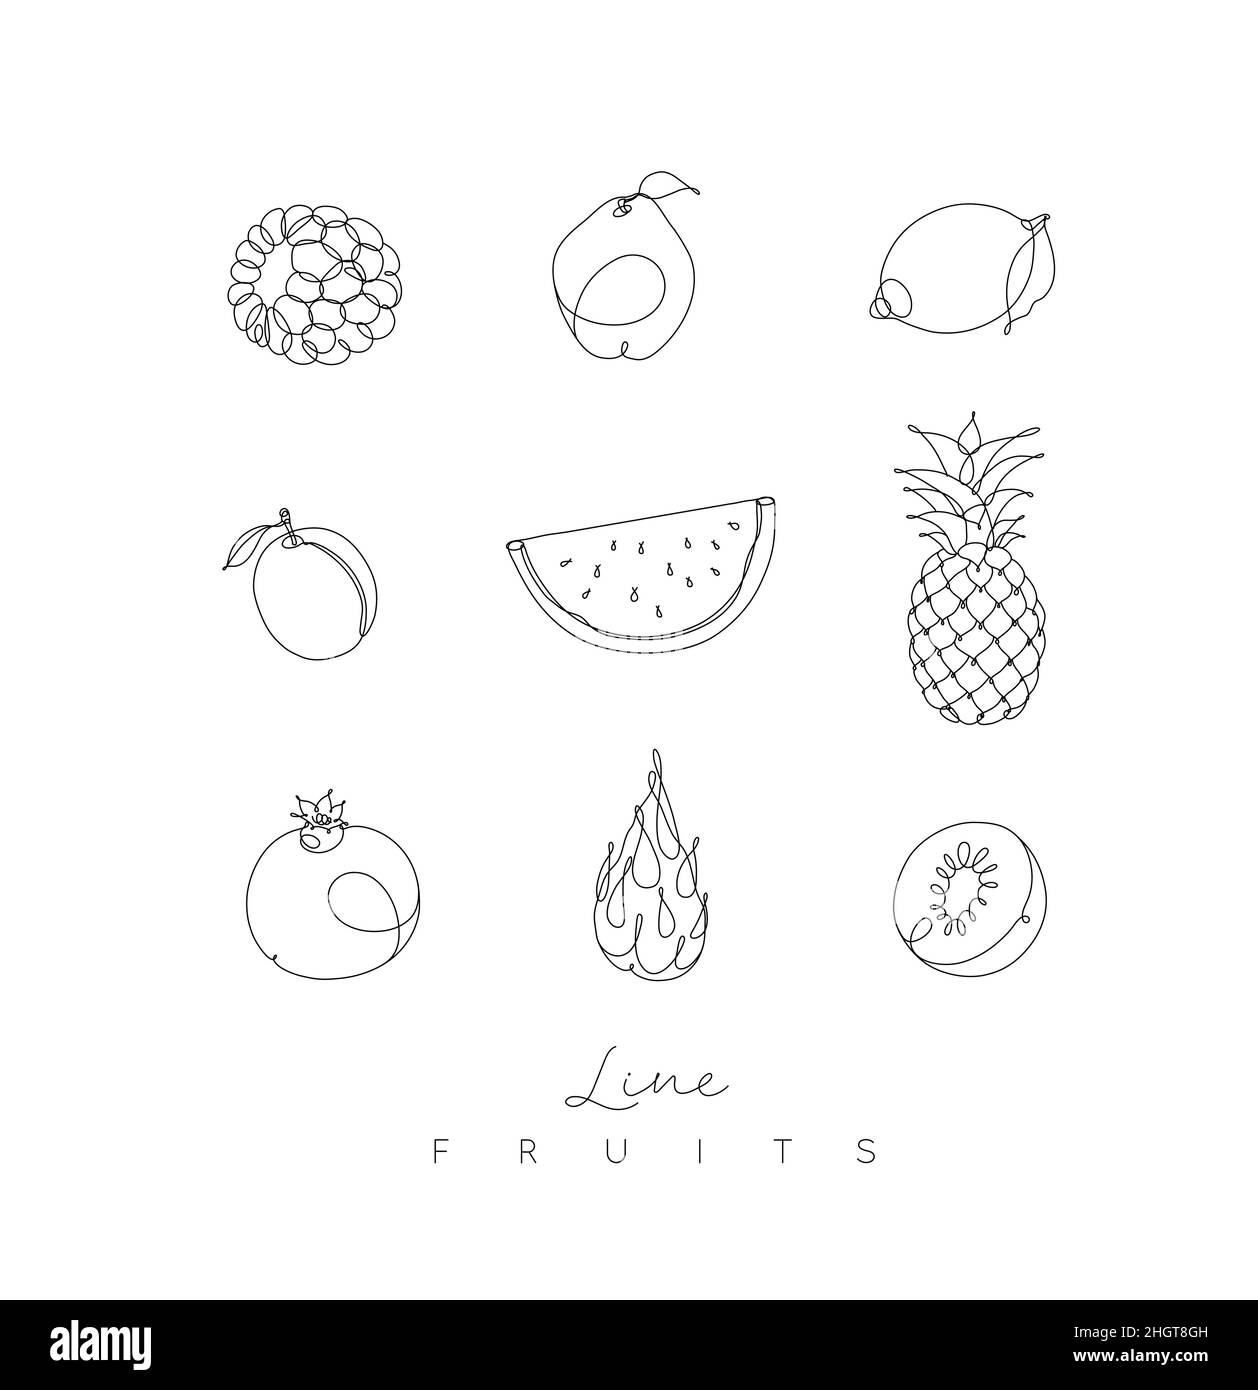 Symbole für Früchte Brombeere, Quitte, Zitrone, Pflaume, Wassermelone, Ananas, Granatapfel, Drachenfrucht, Kiwi im Zeichenstil der Stiftlinie auf weißem Hintergrund Stock Vektor